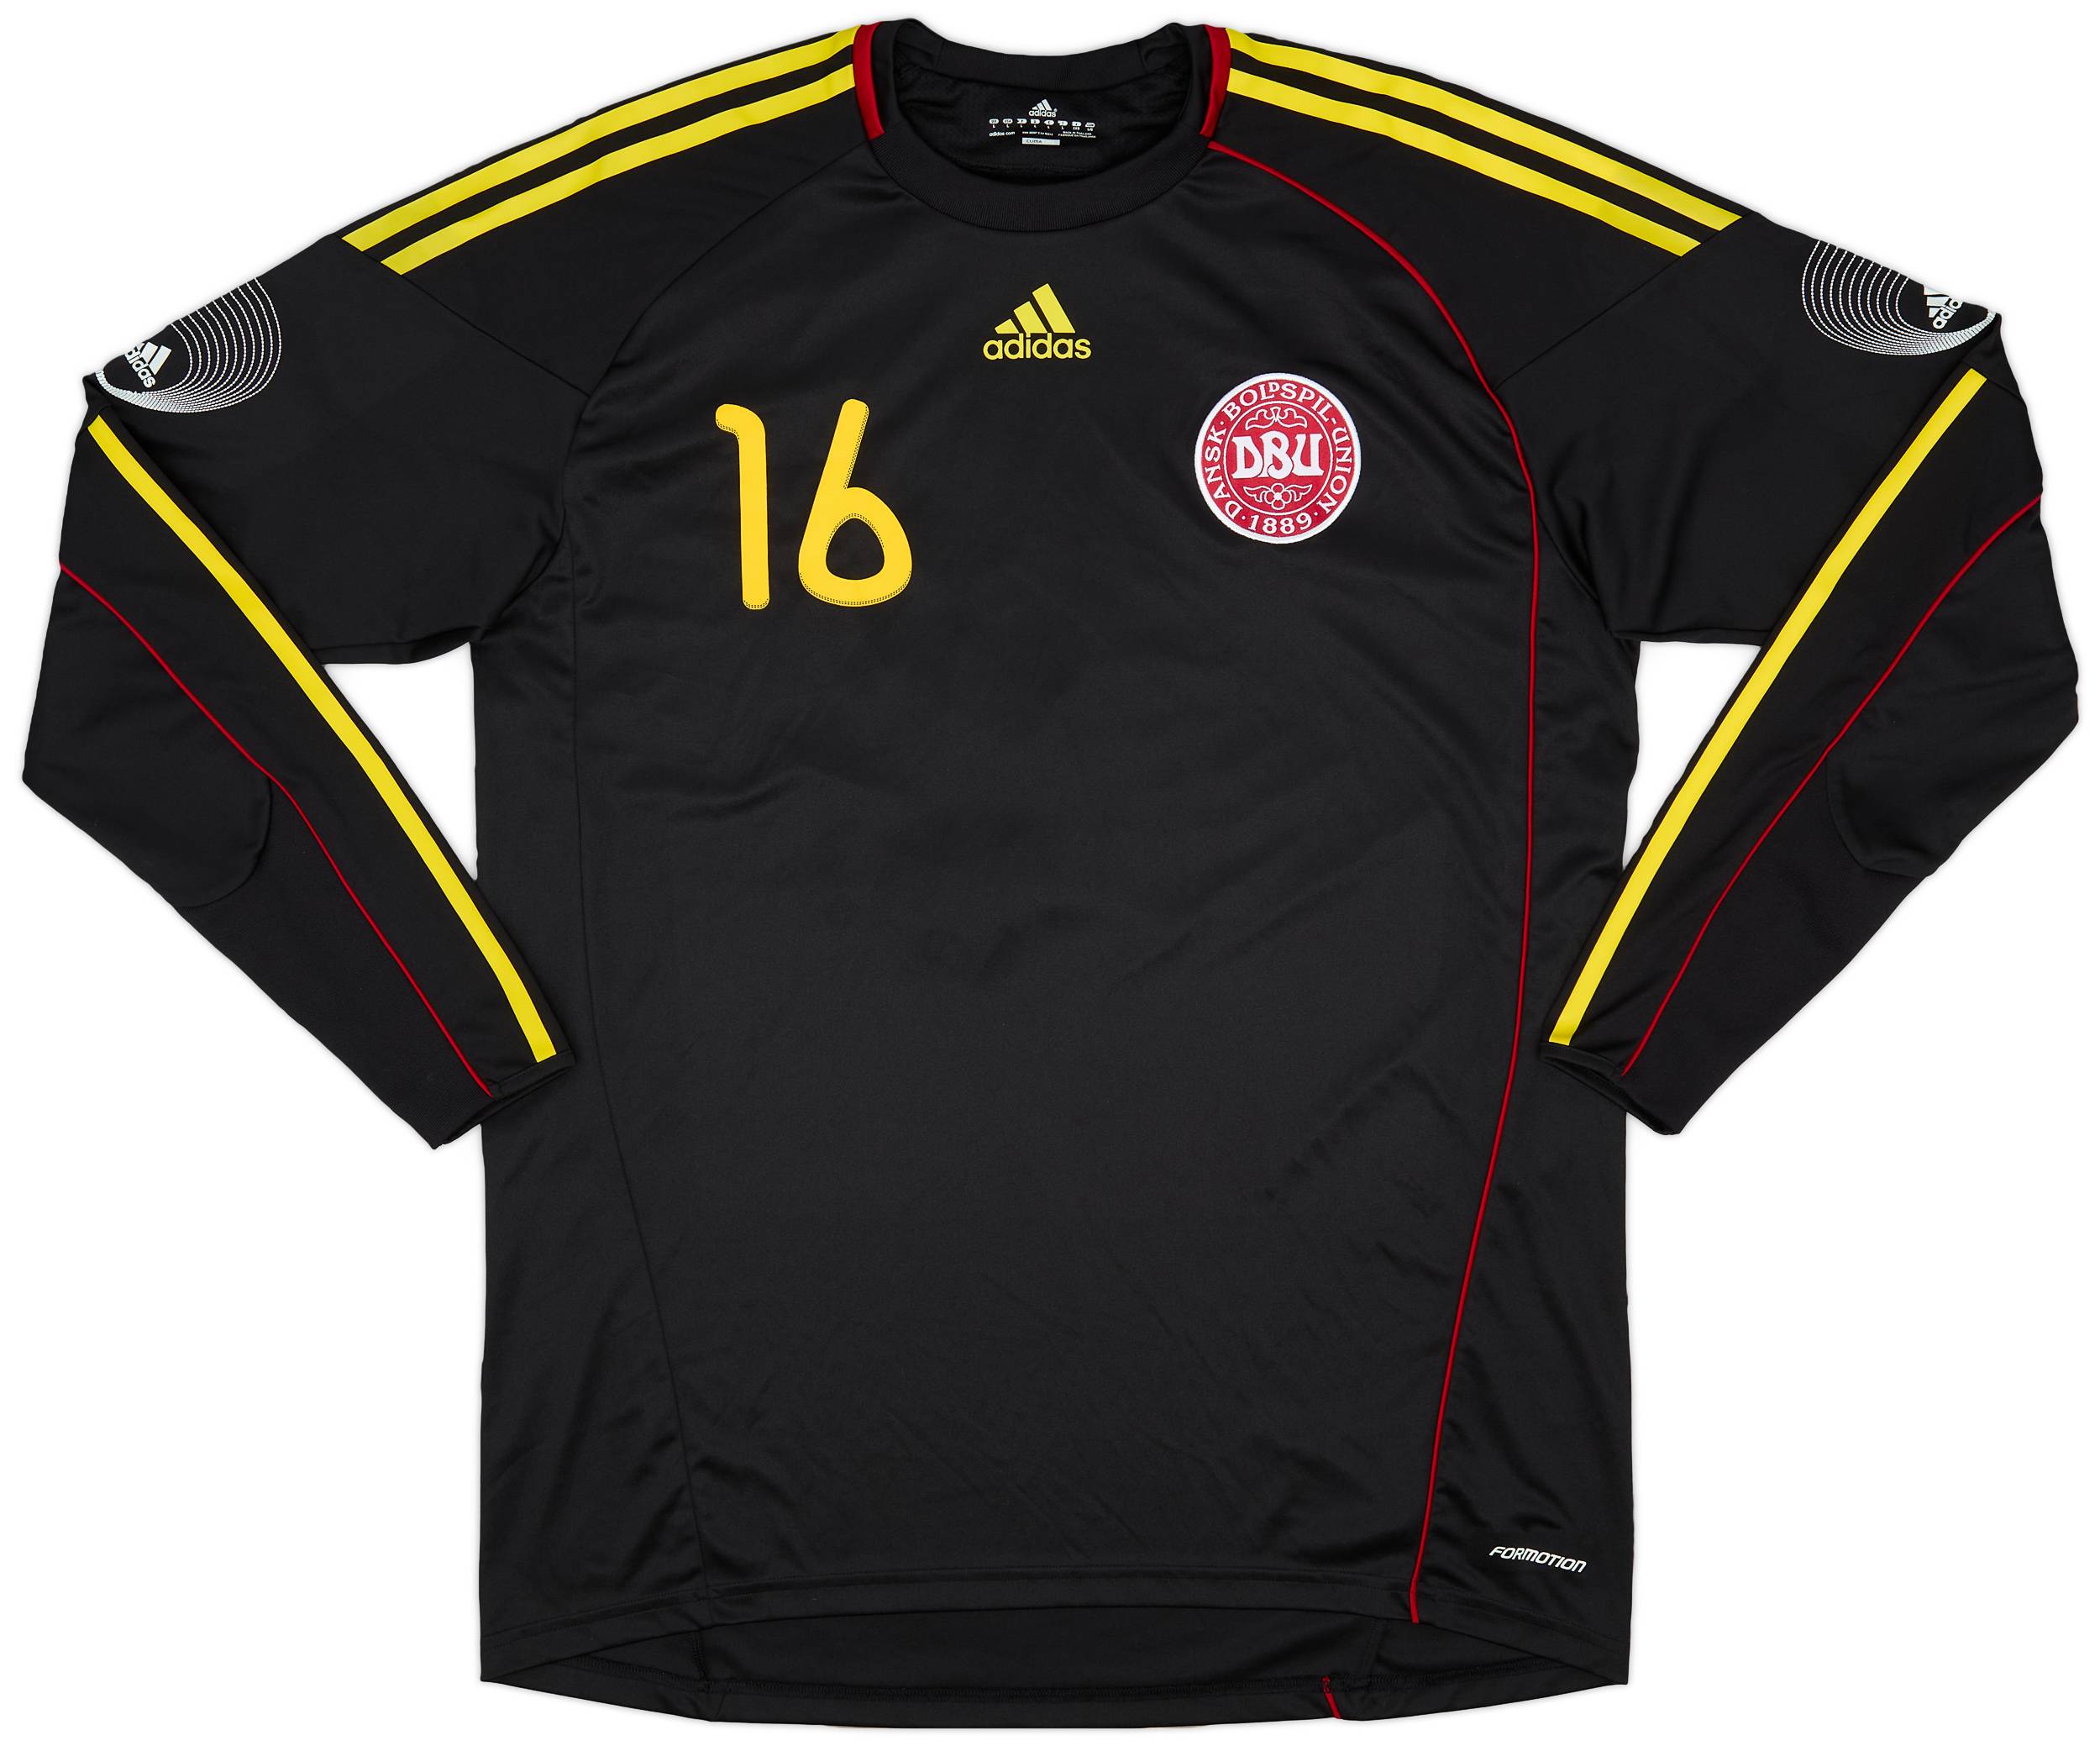 2010-12 Denmark Player Issue GK Shirt #16 - 9/10 - (L)